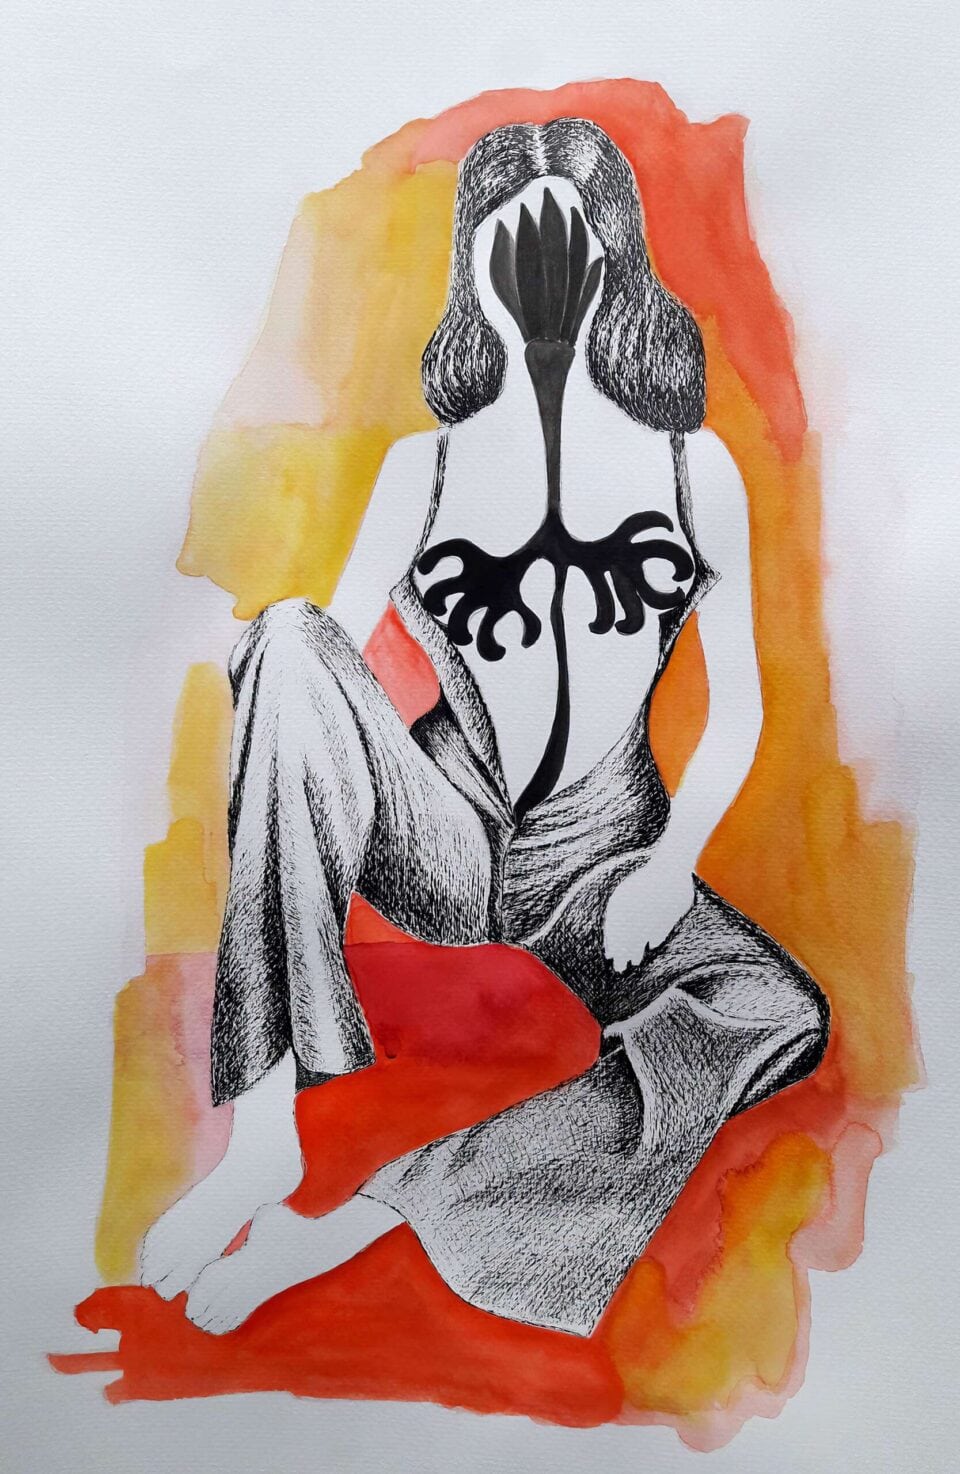 Sexy Girl 2 2021, Encre de chine et aquarelle sur papier, 30x40 cm